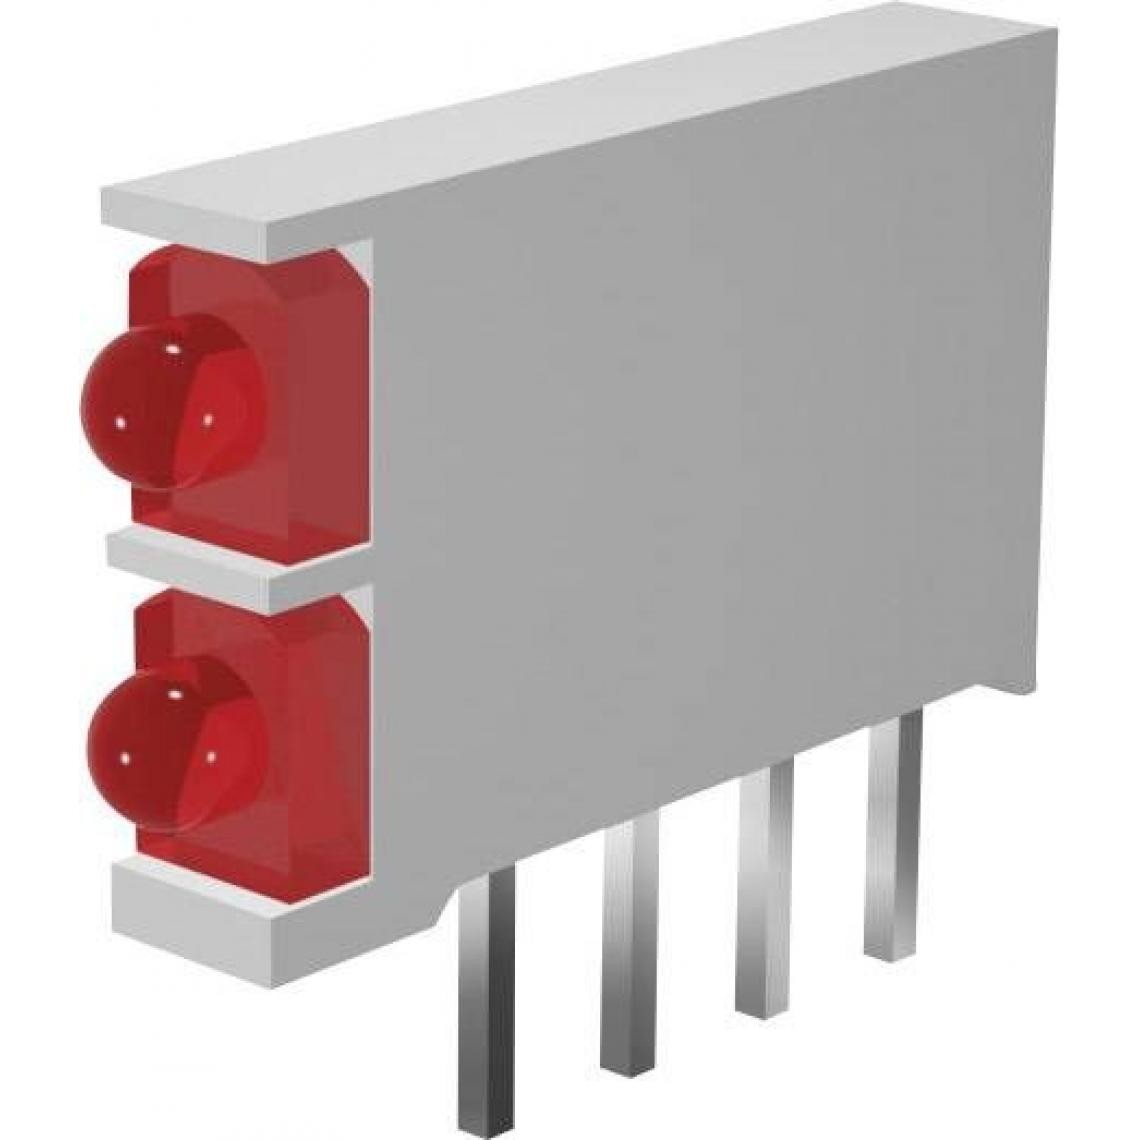 Inconnu - Elément LED Signal Construct DBI01302 2 prises rouge, vert (L x l x h) 15.5 x 2.5 x 12 mm 1 pc(s) - Accessoires et Pièces Détachées